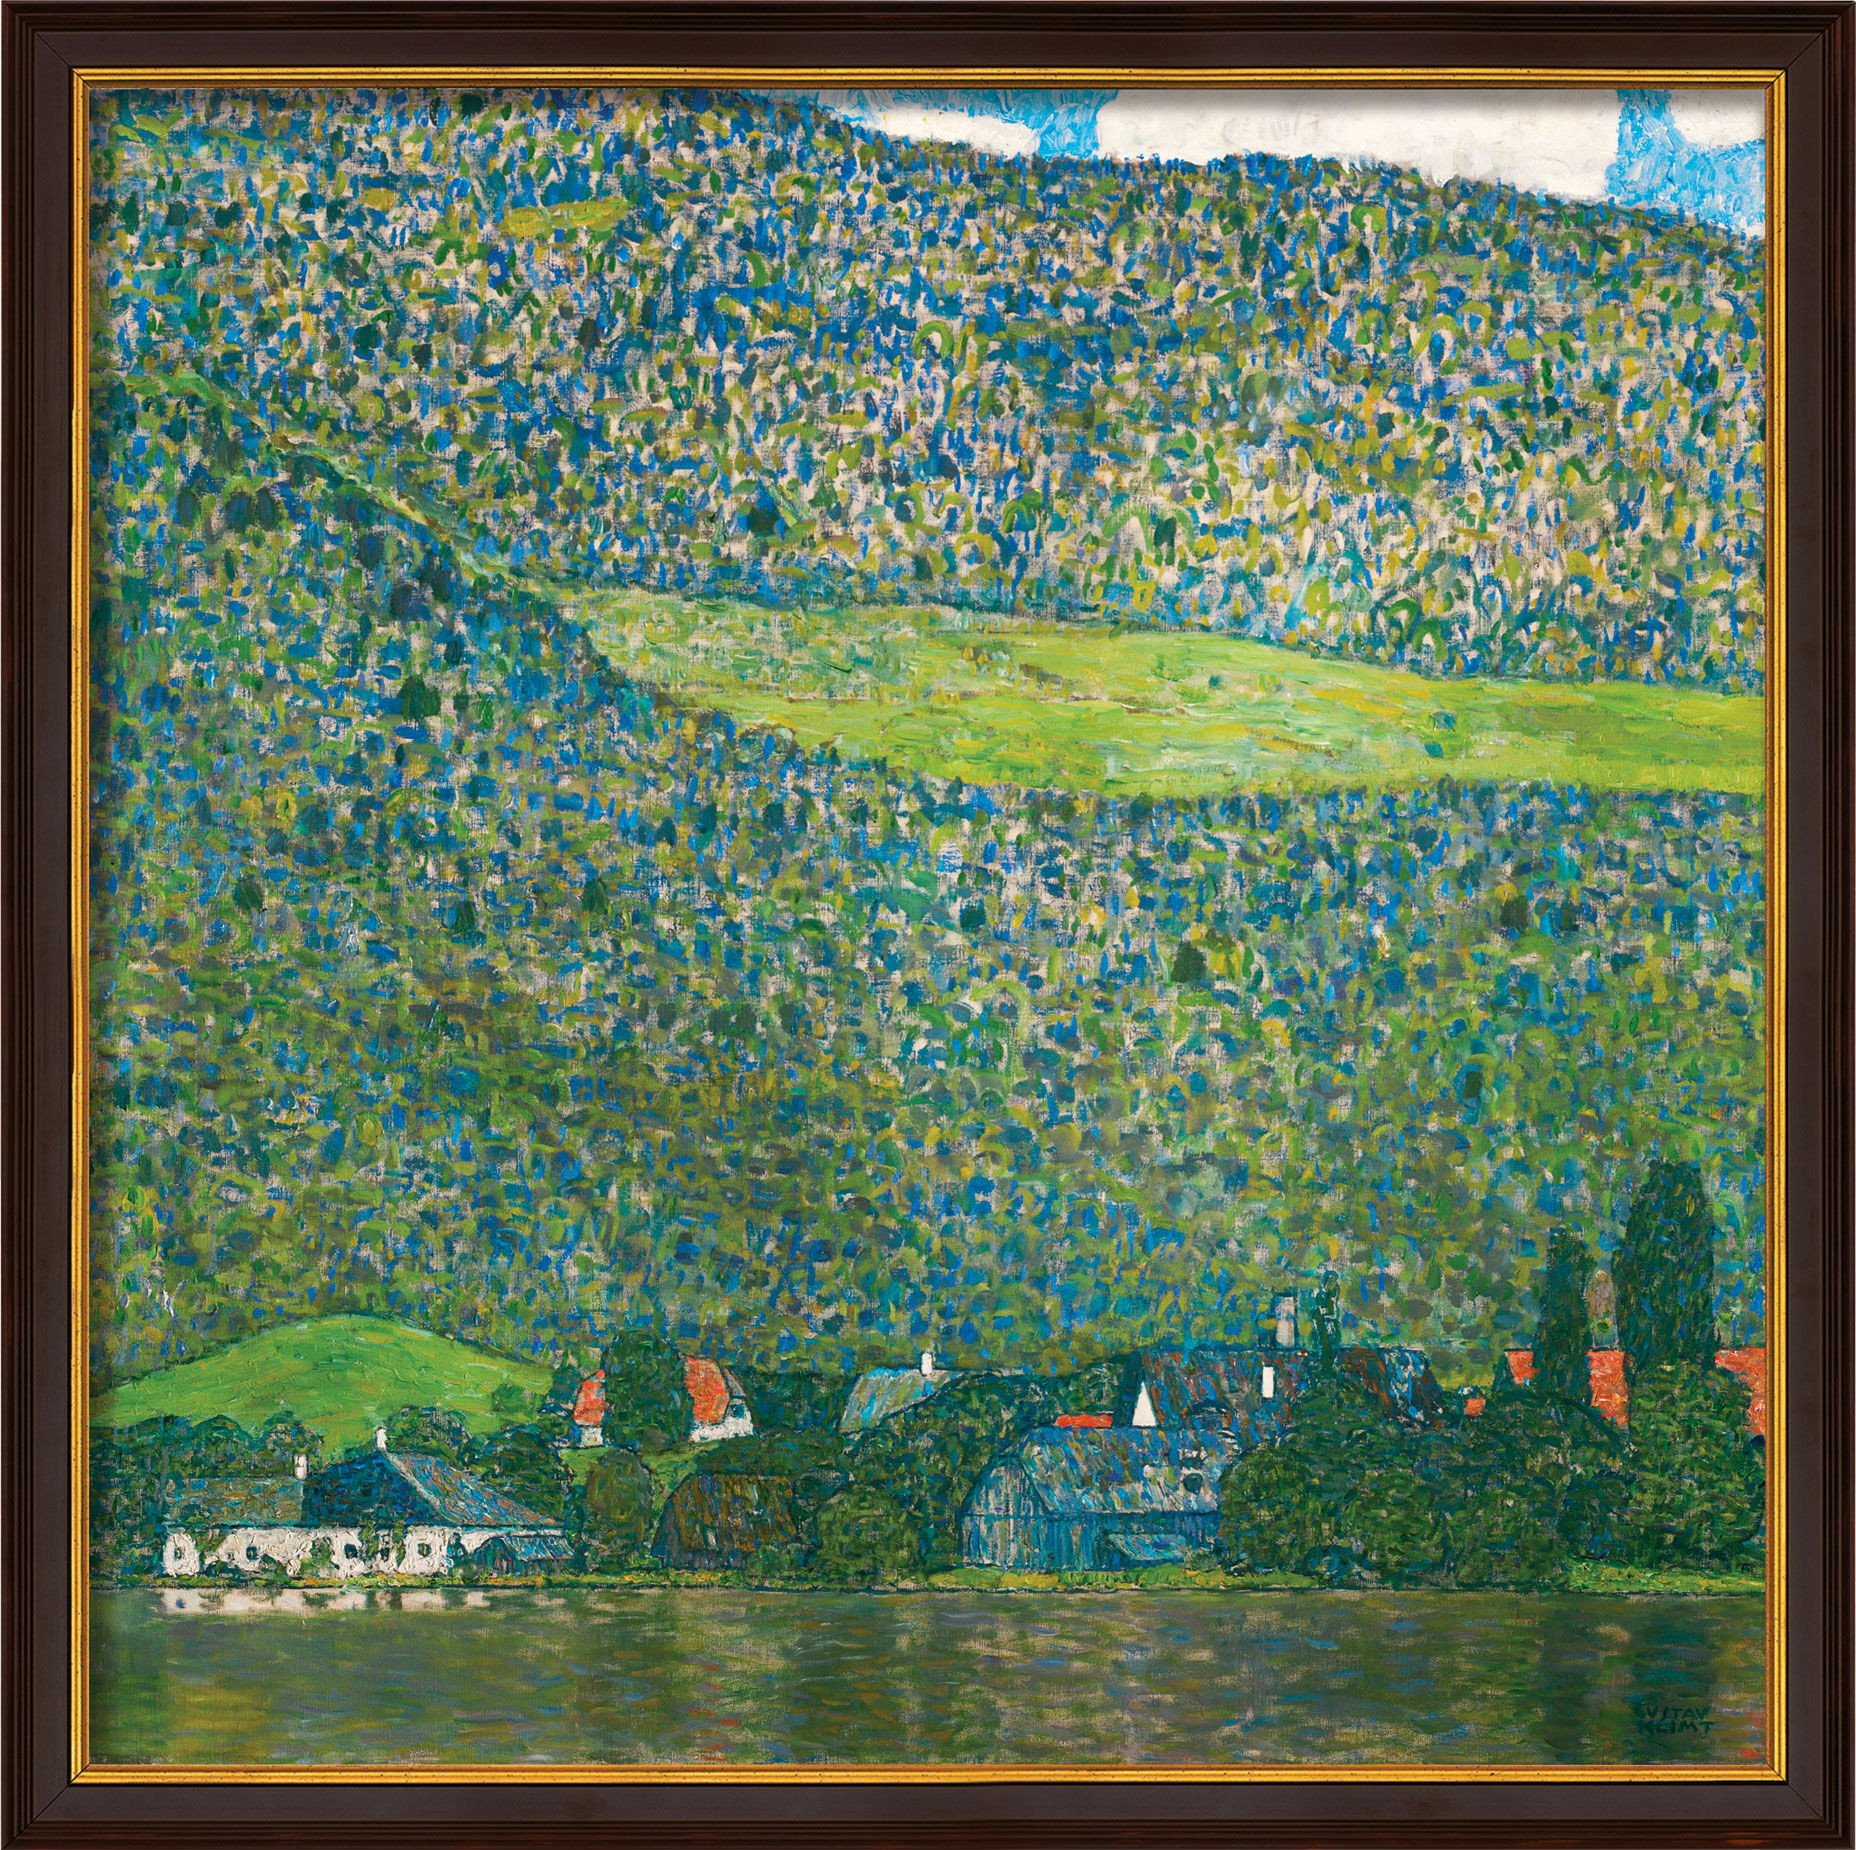 Beeld "Litzlberg aan de Attersee" (1915), ingelijst von Gustav Klimt